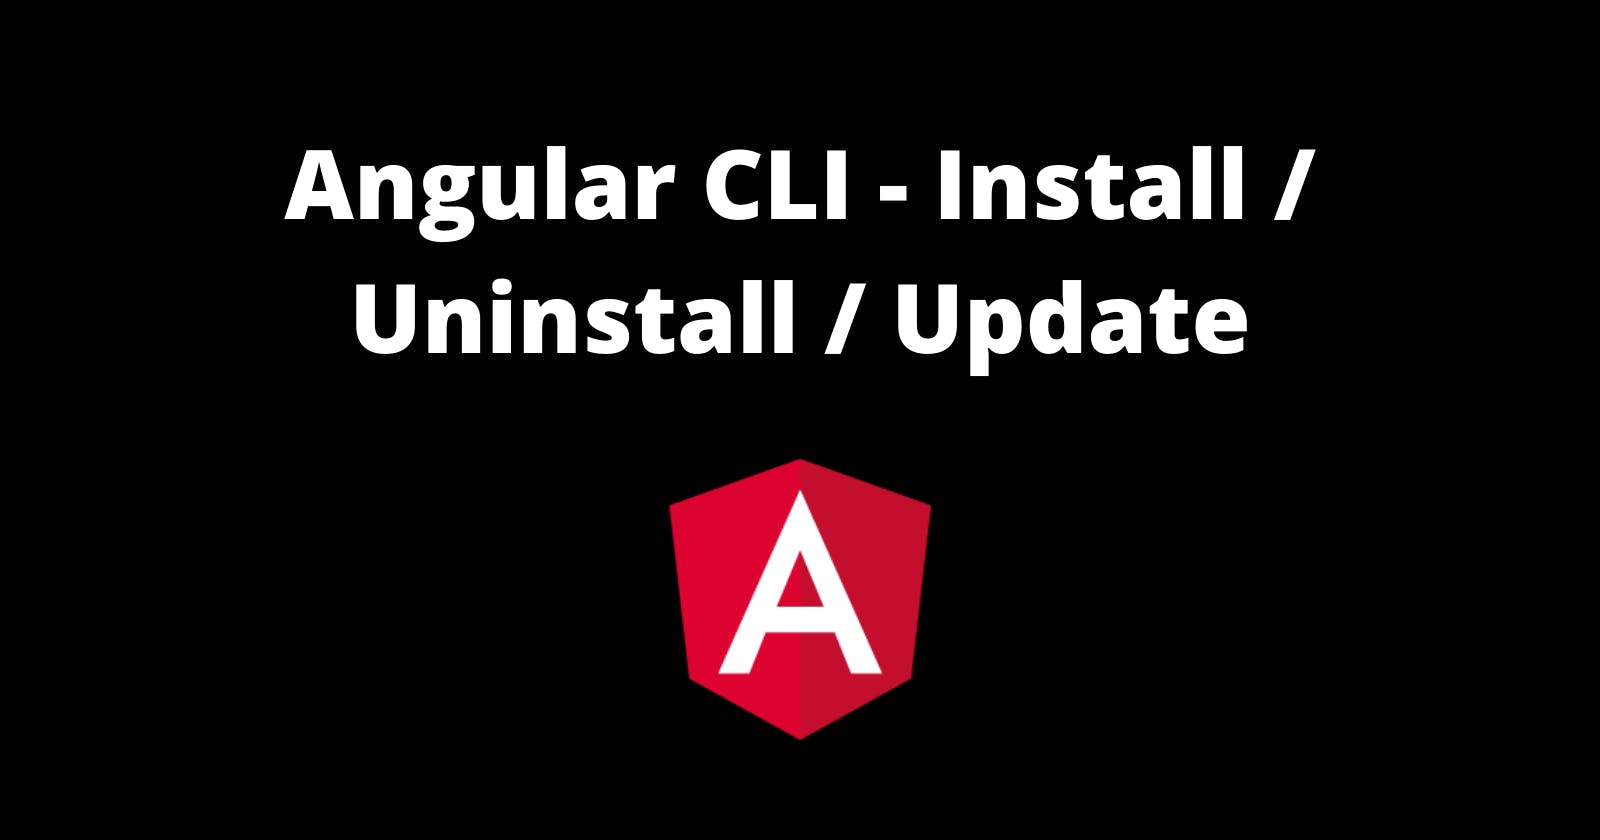 How to install/ update/ uninstall Angular CLI?